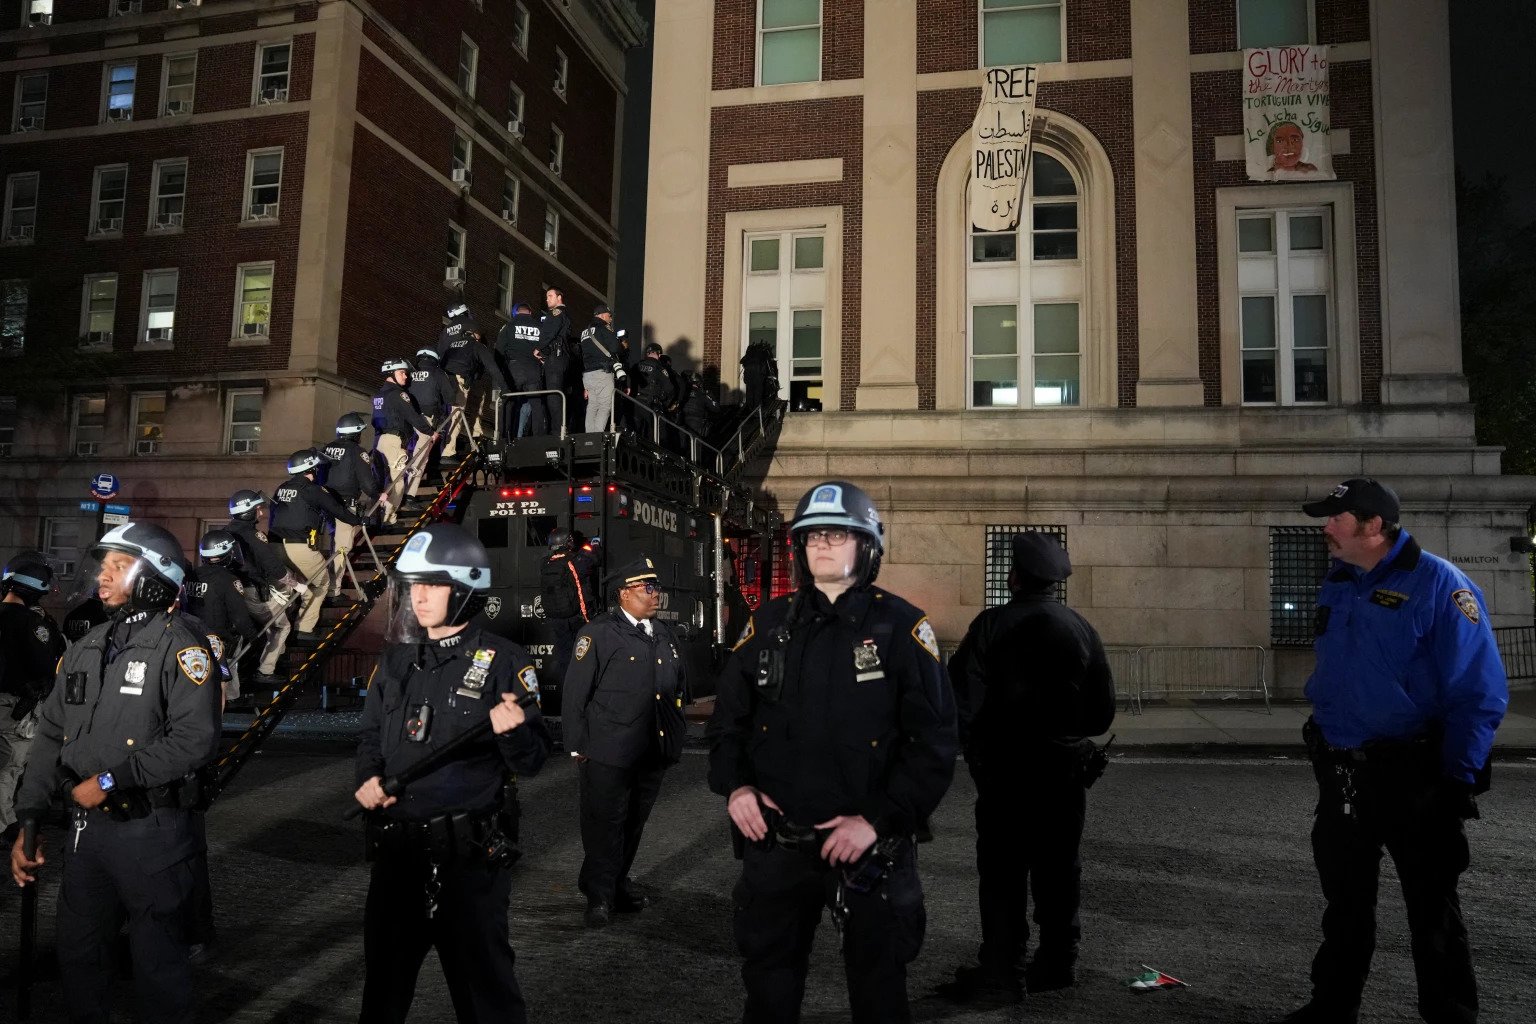 कोलंबिया विश्वविद्यालय: दर्जनों प्रदर्शनकारियों ने इमारत पर कब्जा कर लिया, देश भर में परिसरों में 1,000 से अधिक गिरफ्तार